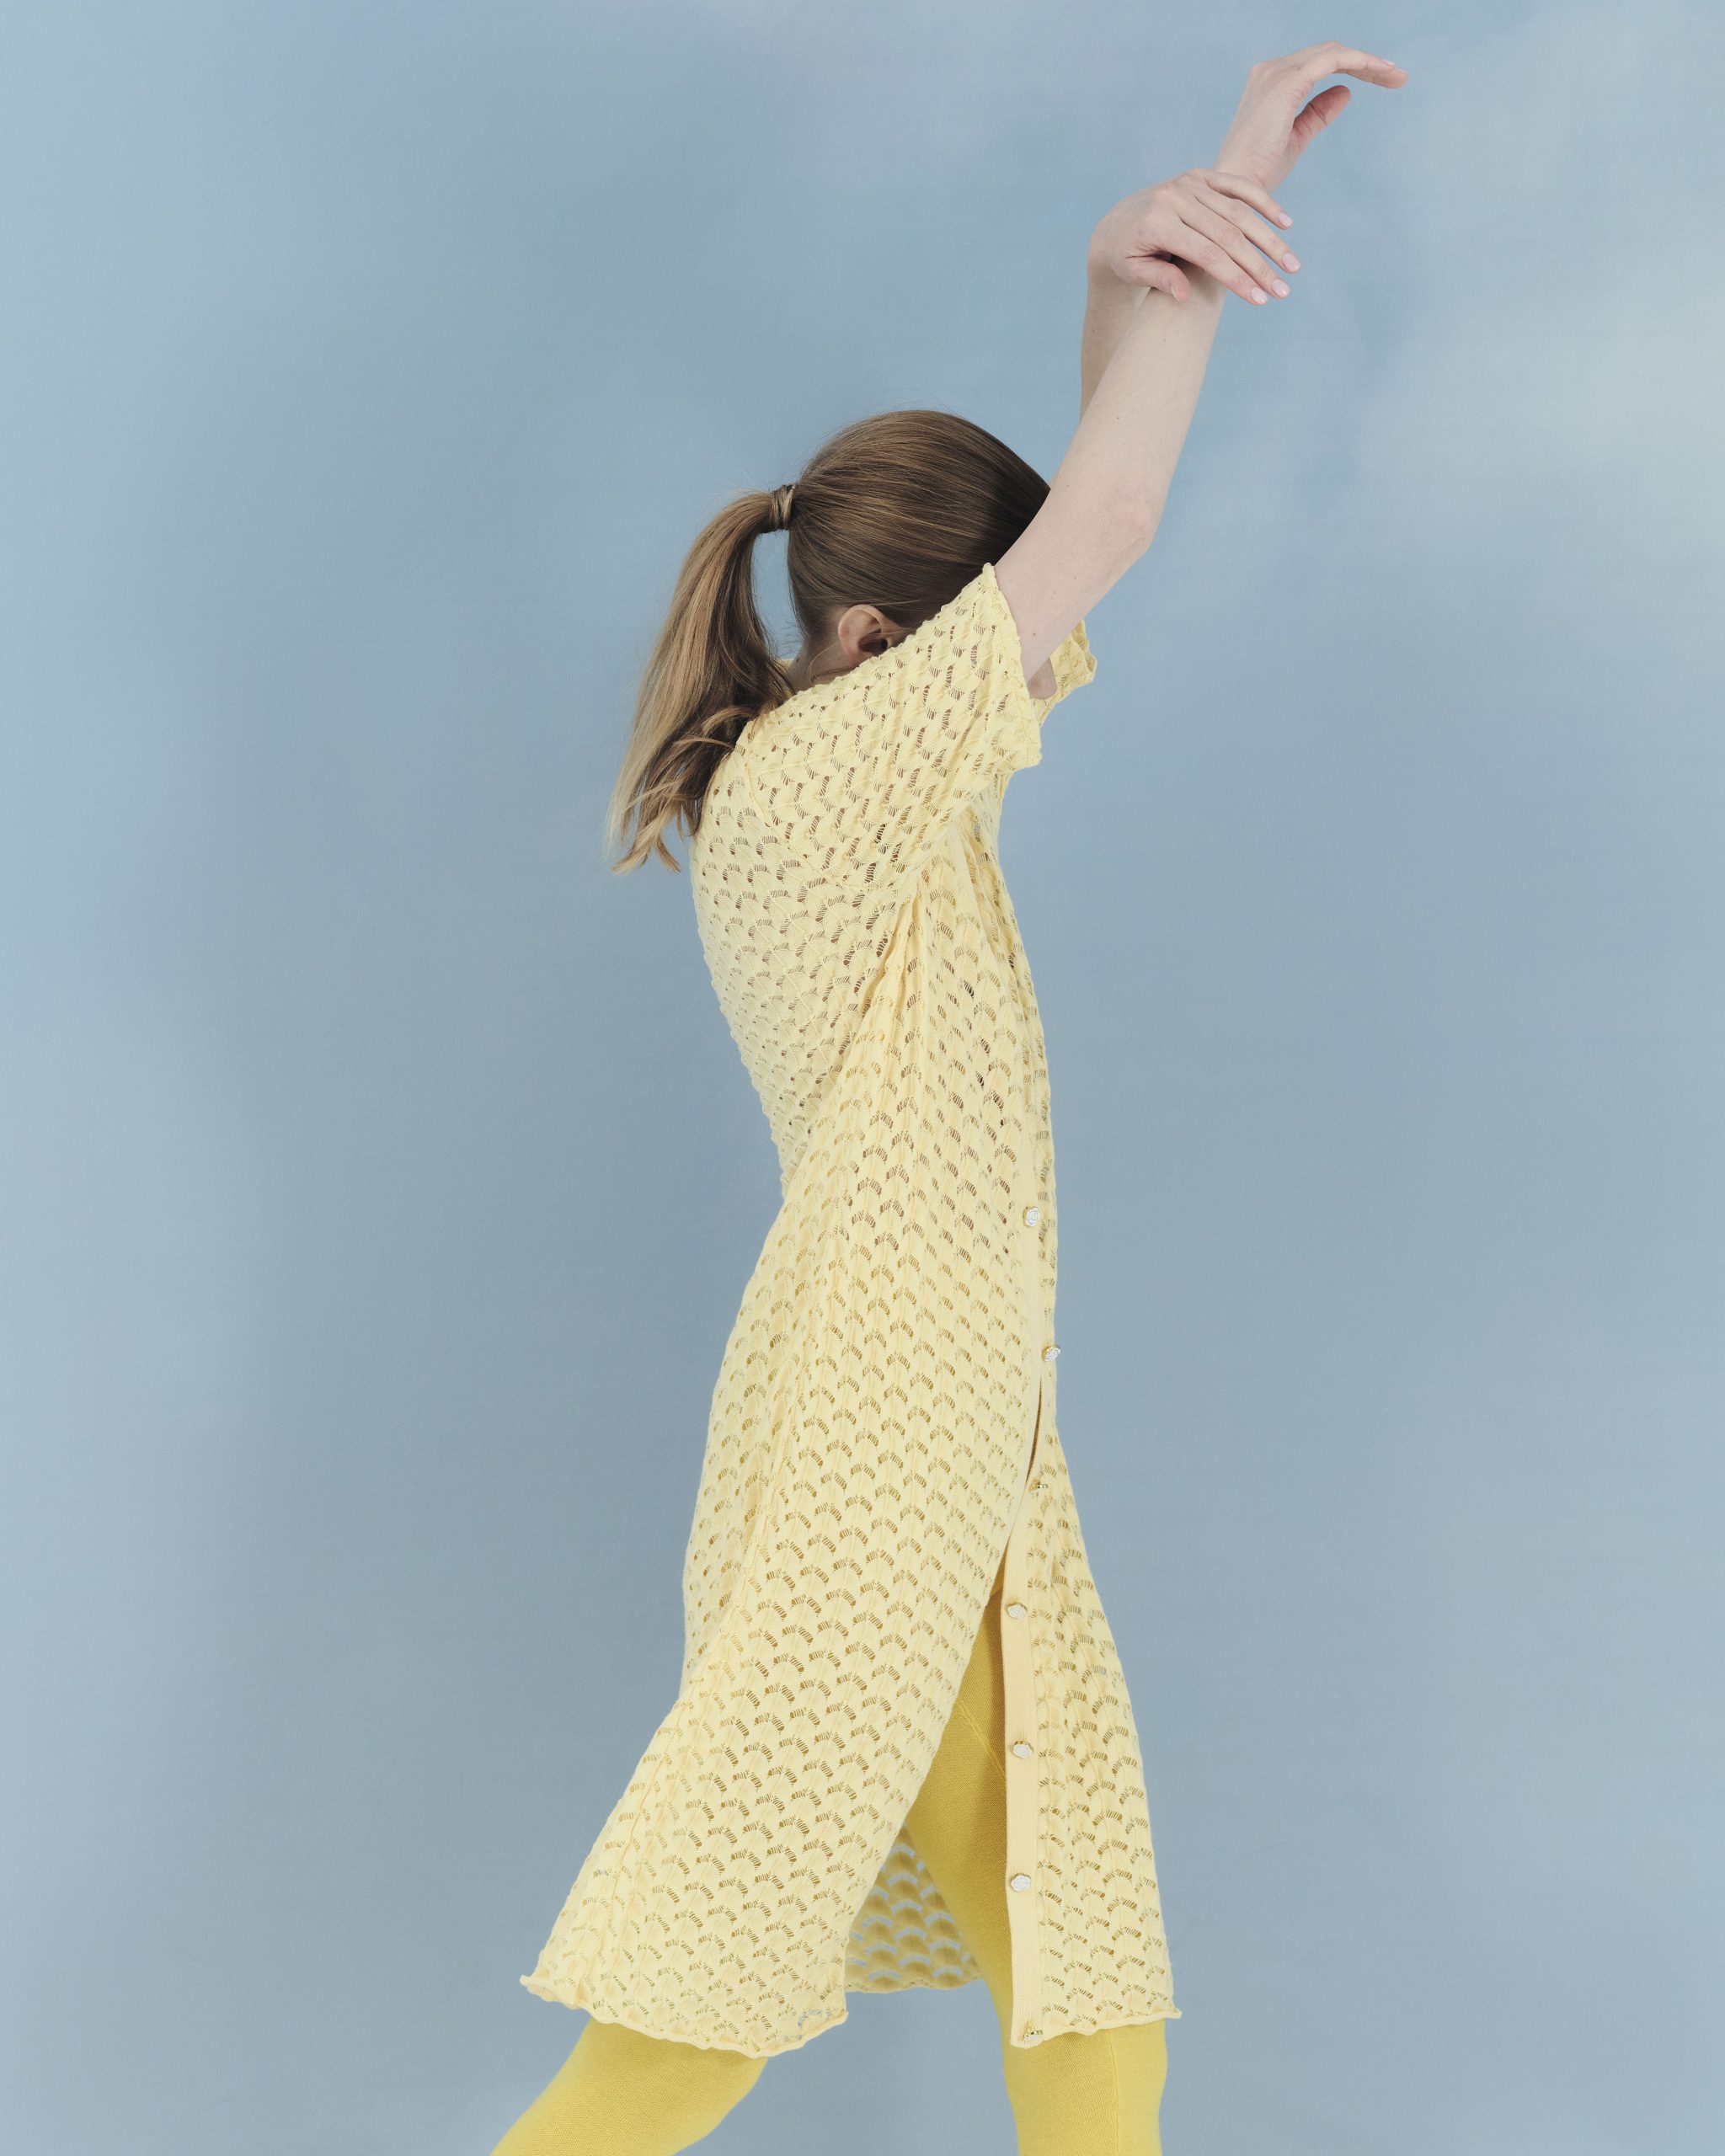 Lace Dress From Organic Cotton Yellow Photoshoot Prototype Amiamalia Luxury Knitwear